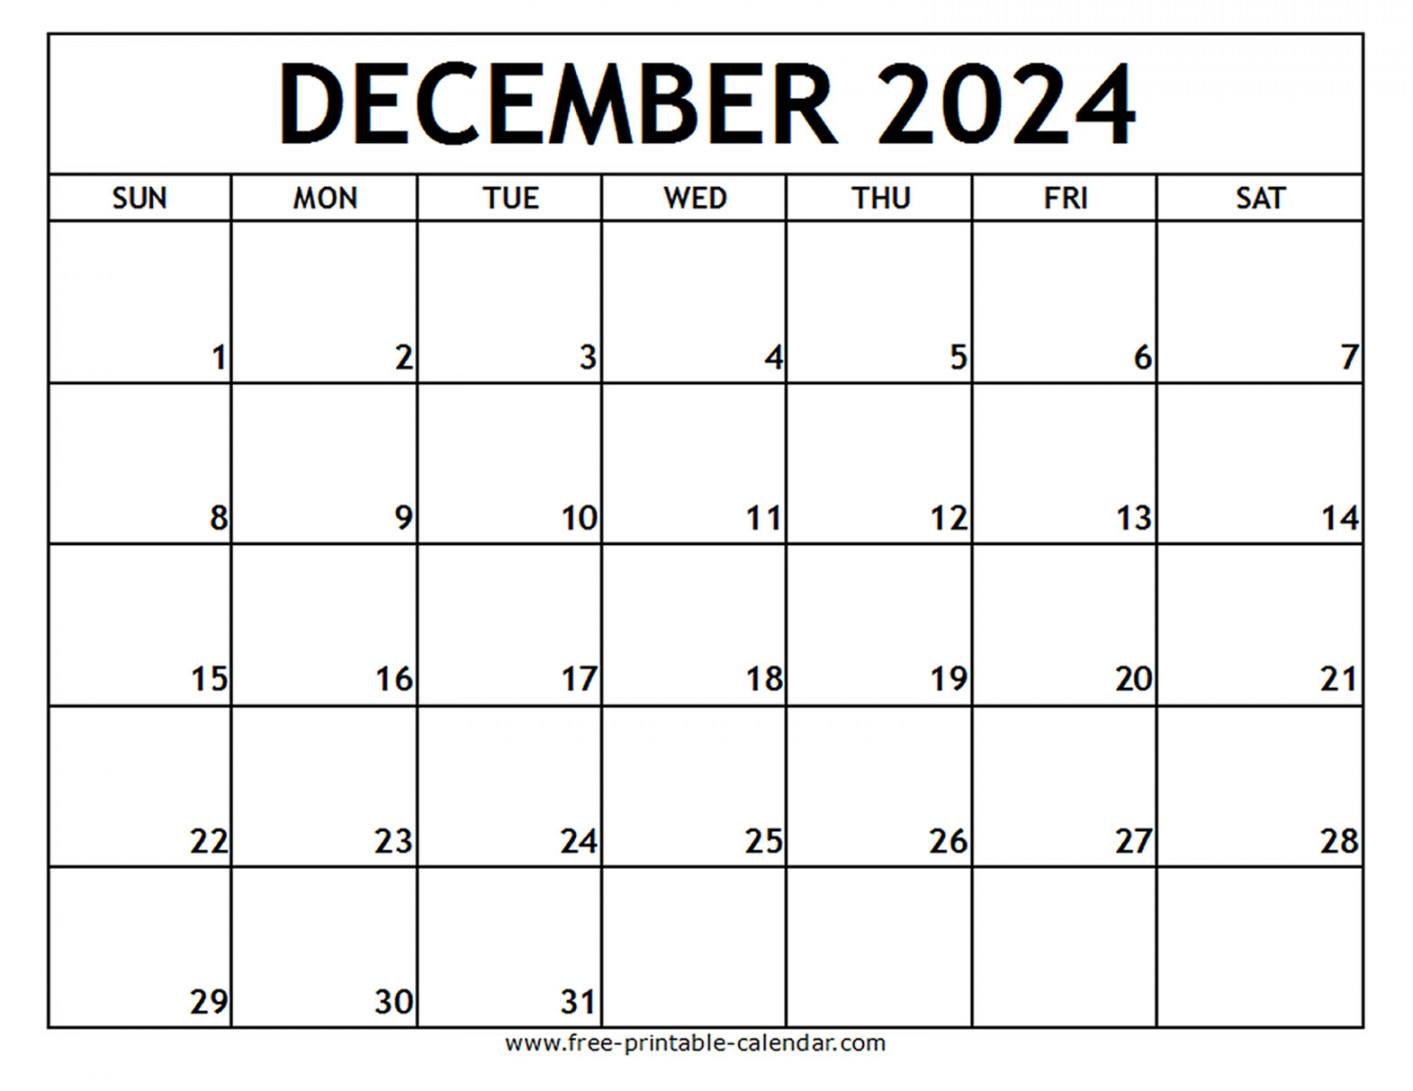 december printable calendar free printable calendar com 1